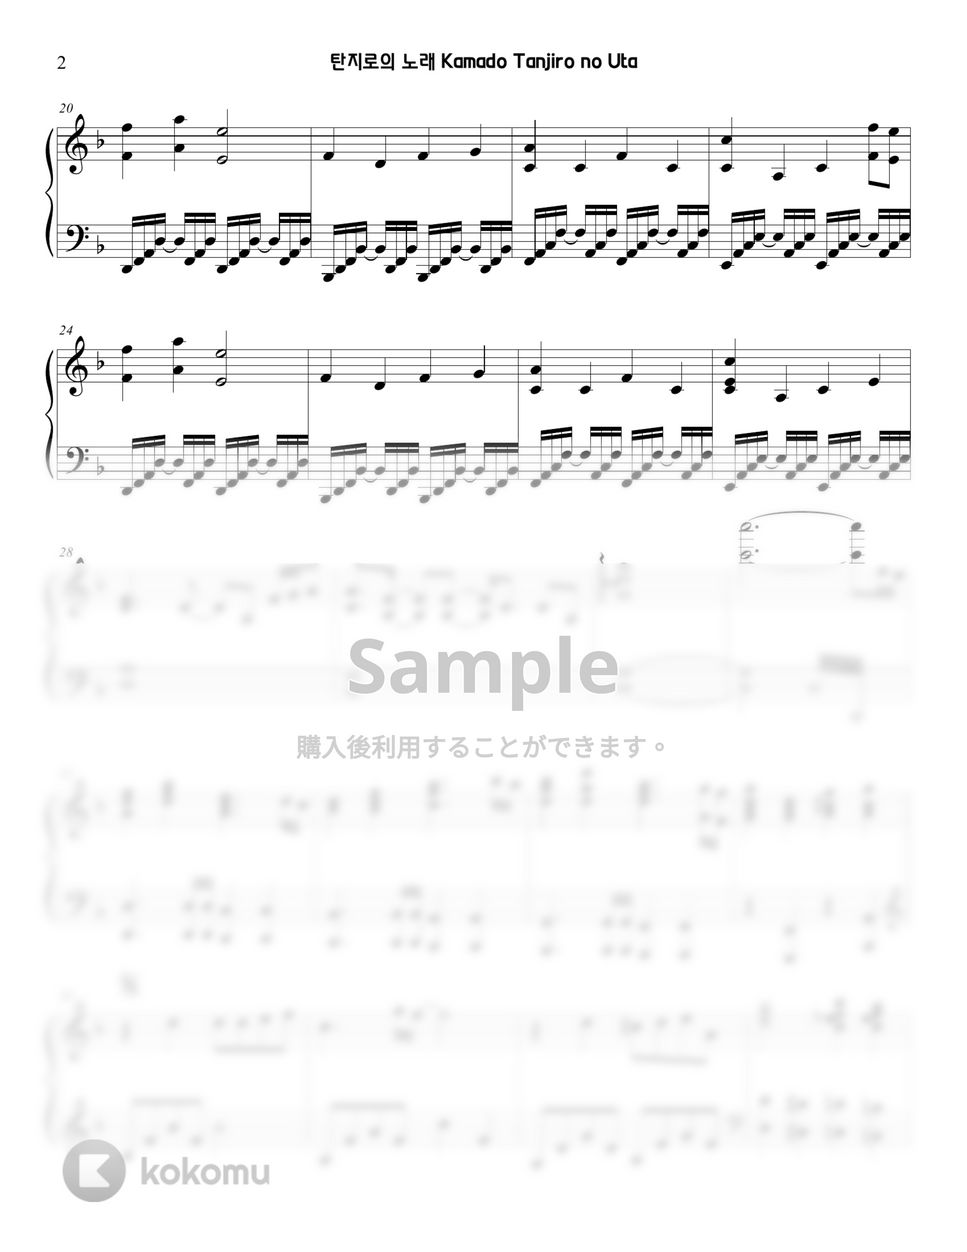 鬼滅の刃 - 竈門炭治郎のうた (piano cover) by Sunny Fingers Piano